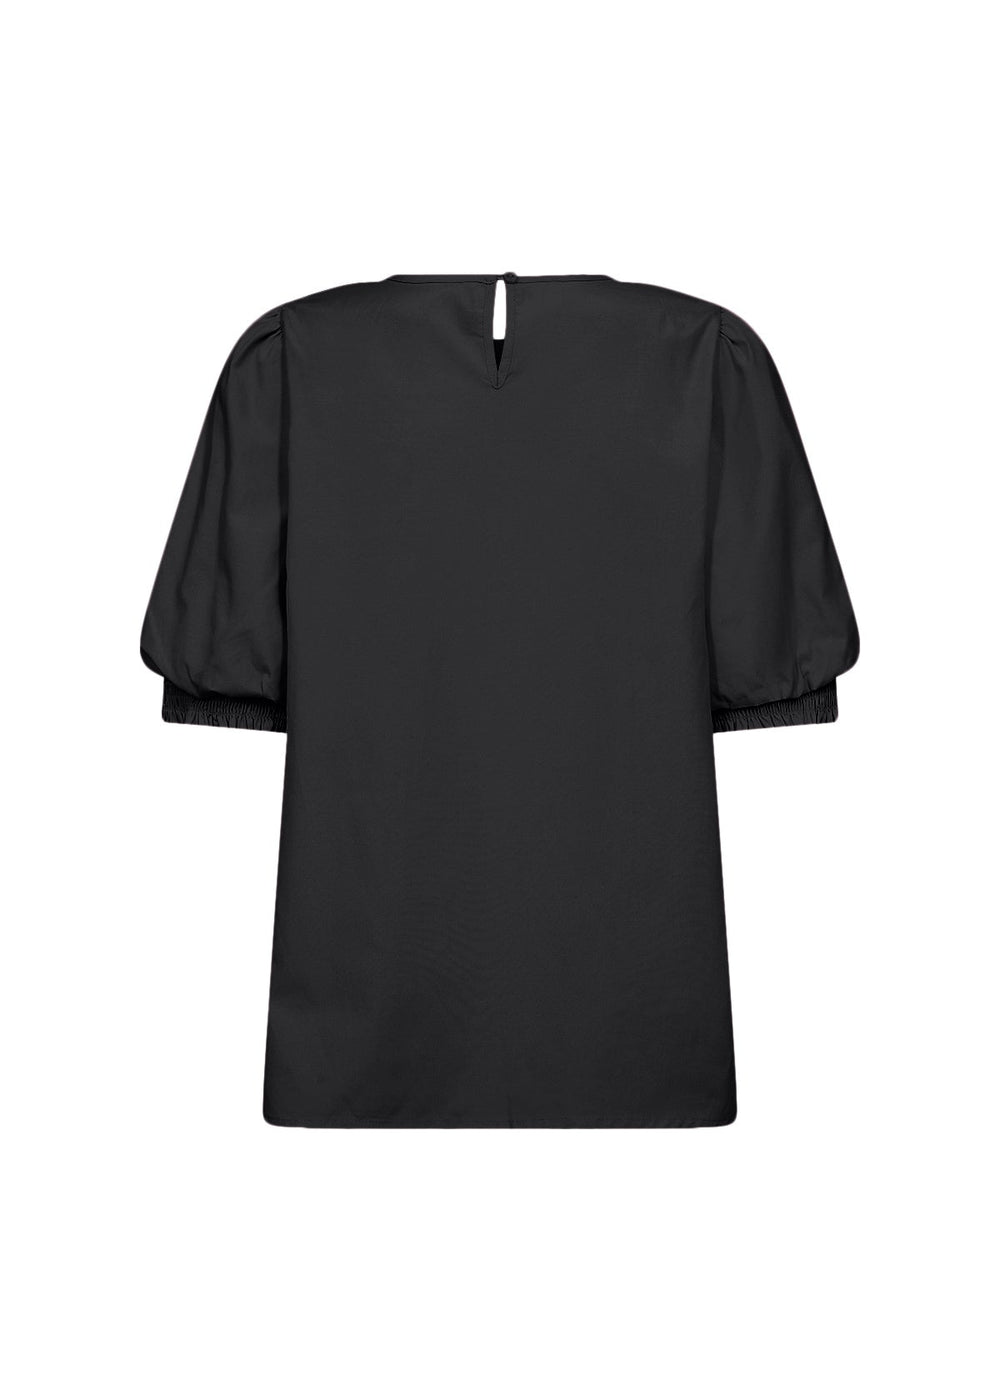 Sc-Netti 67 Black | Skjorter og bluser | Smuk - Dameklær på nett